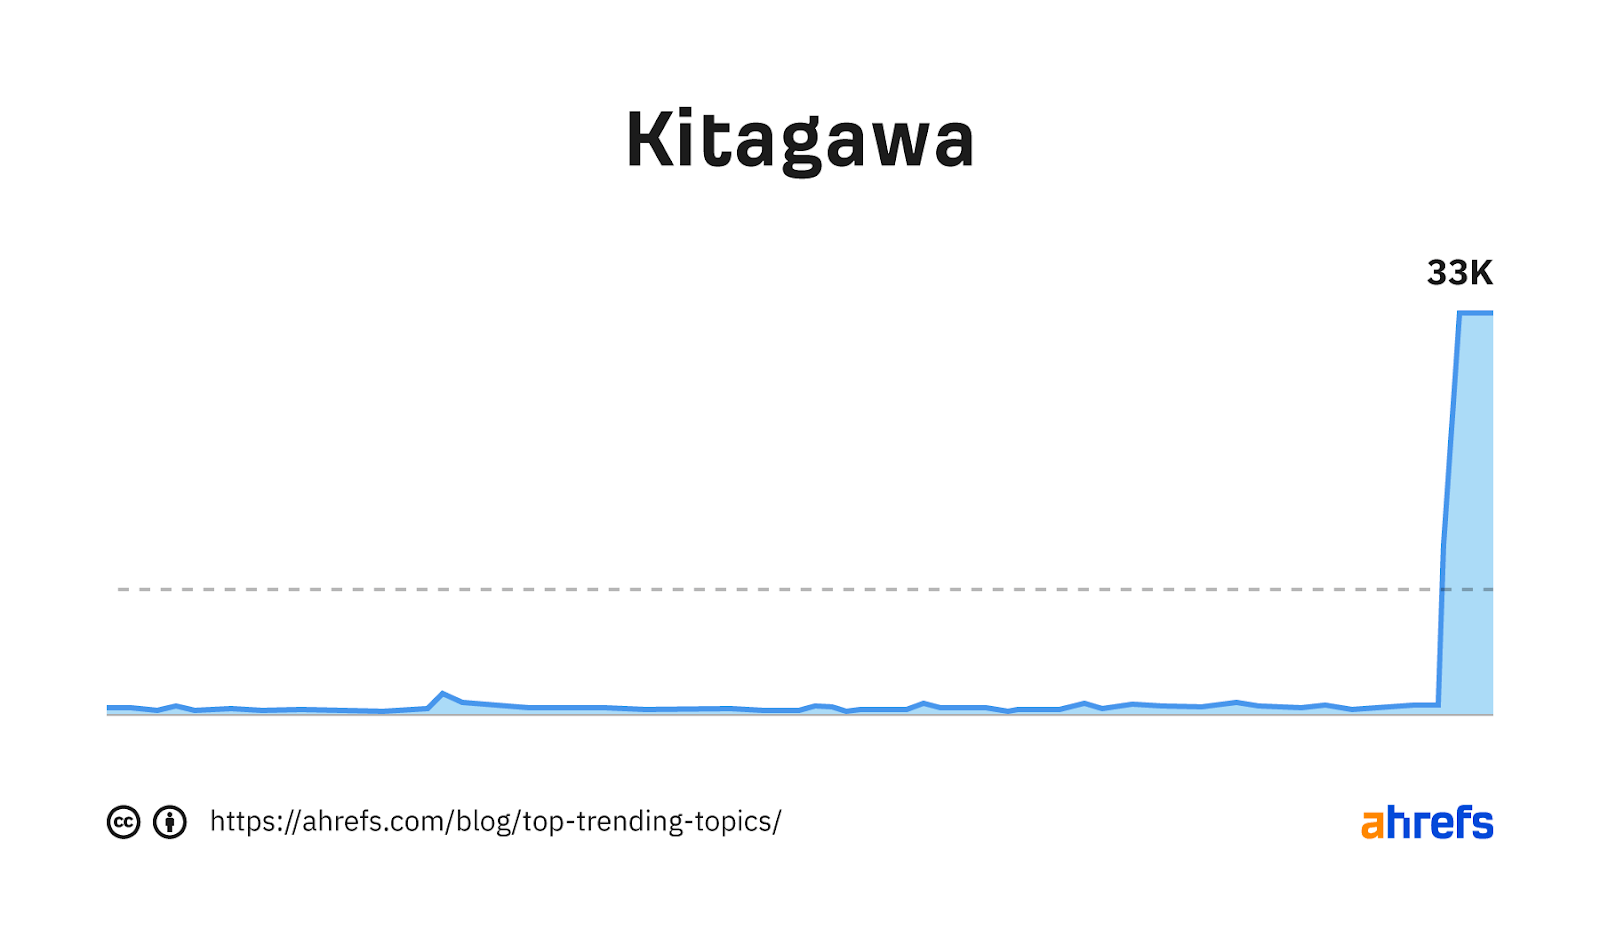 Gráfico de tendencia de la palabra clave "kitagawa"